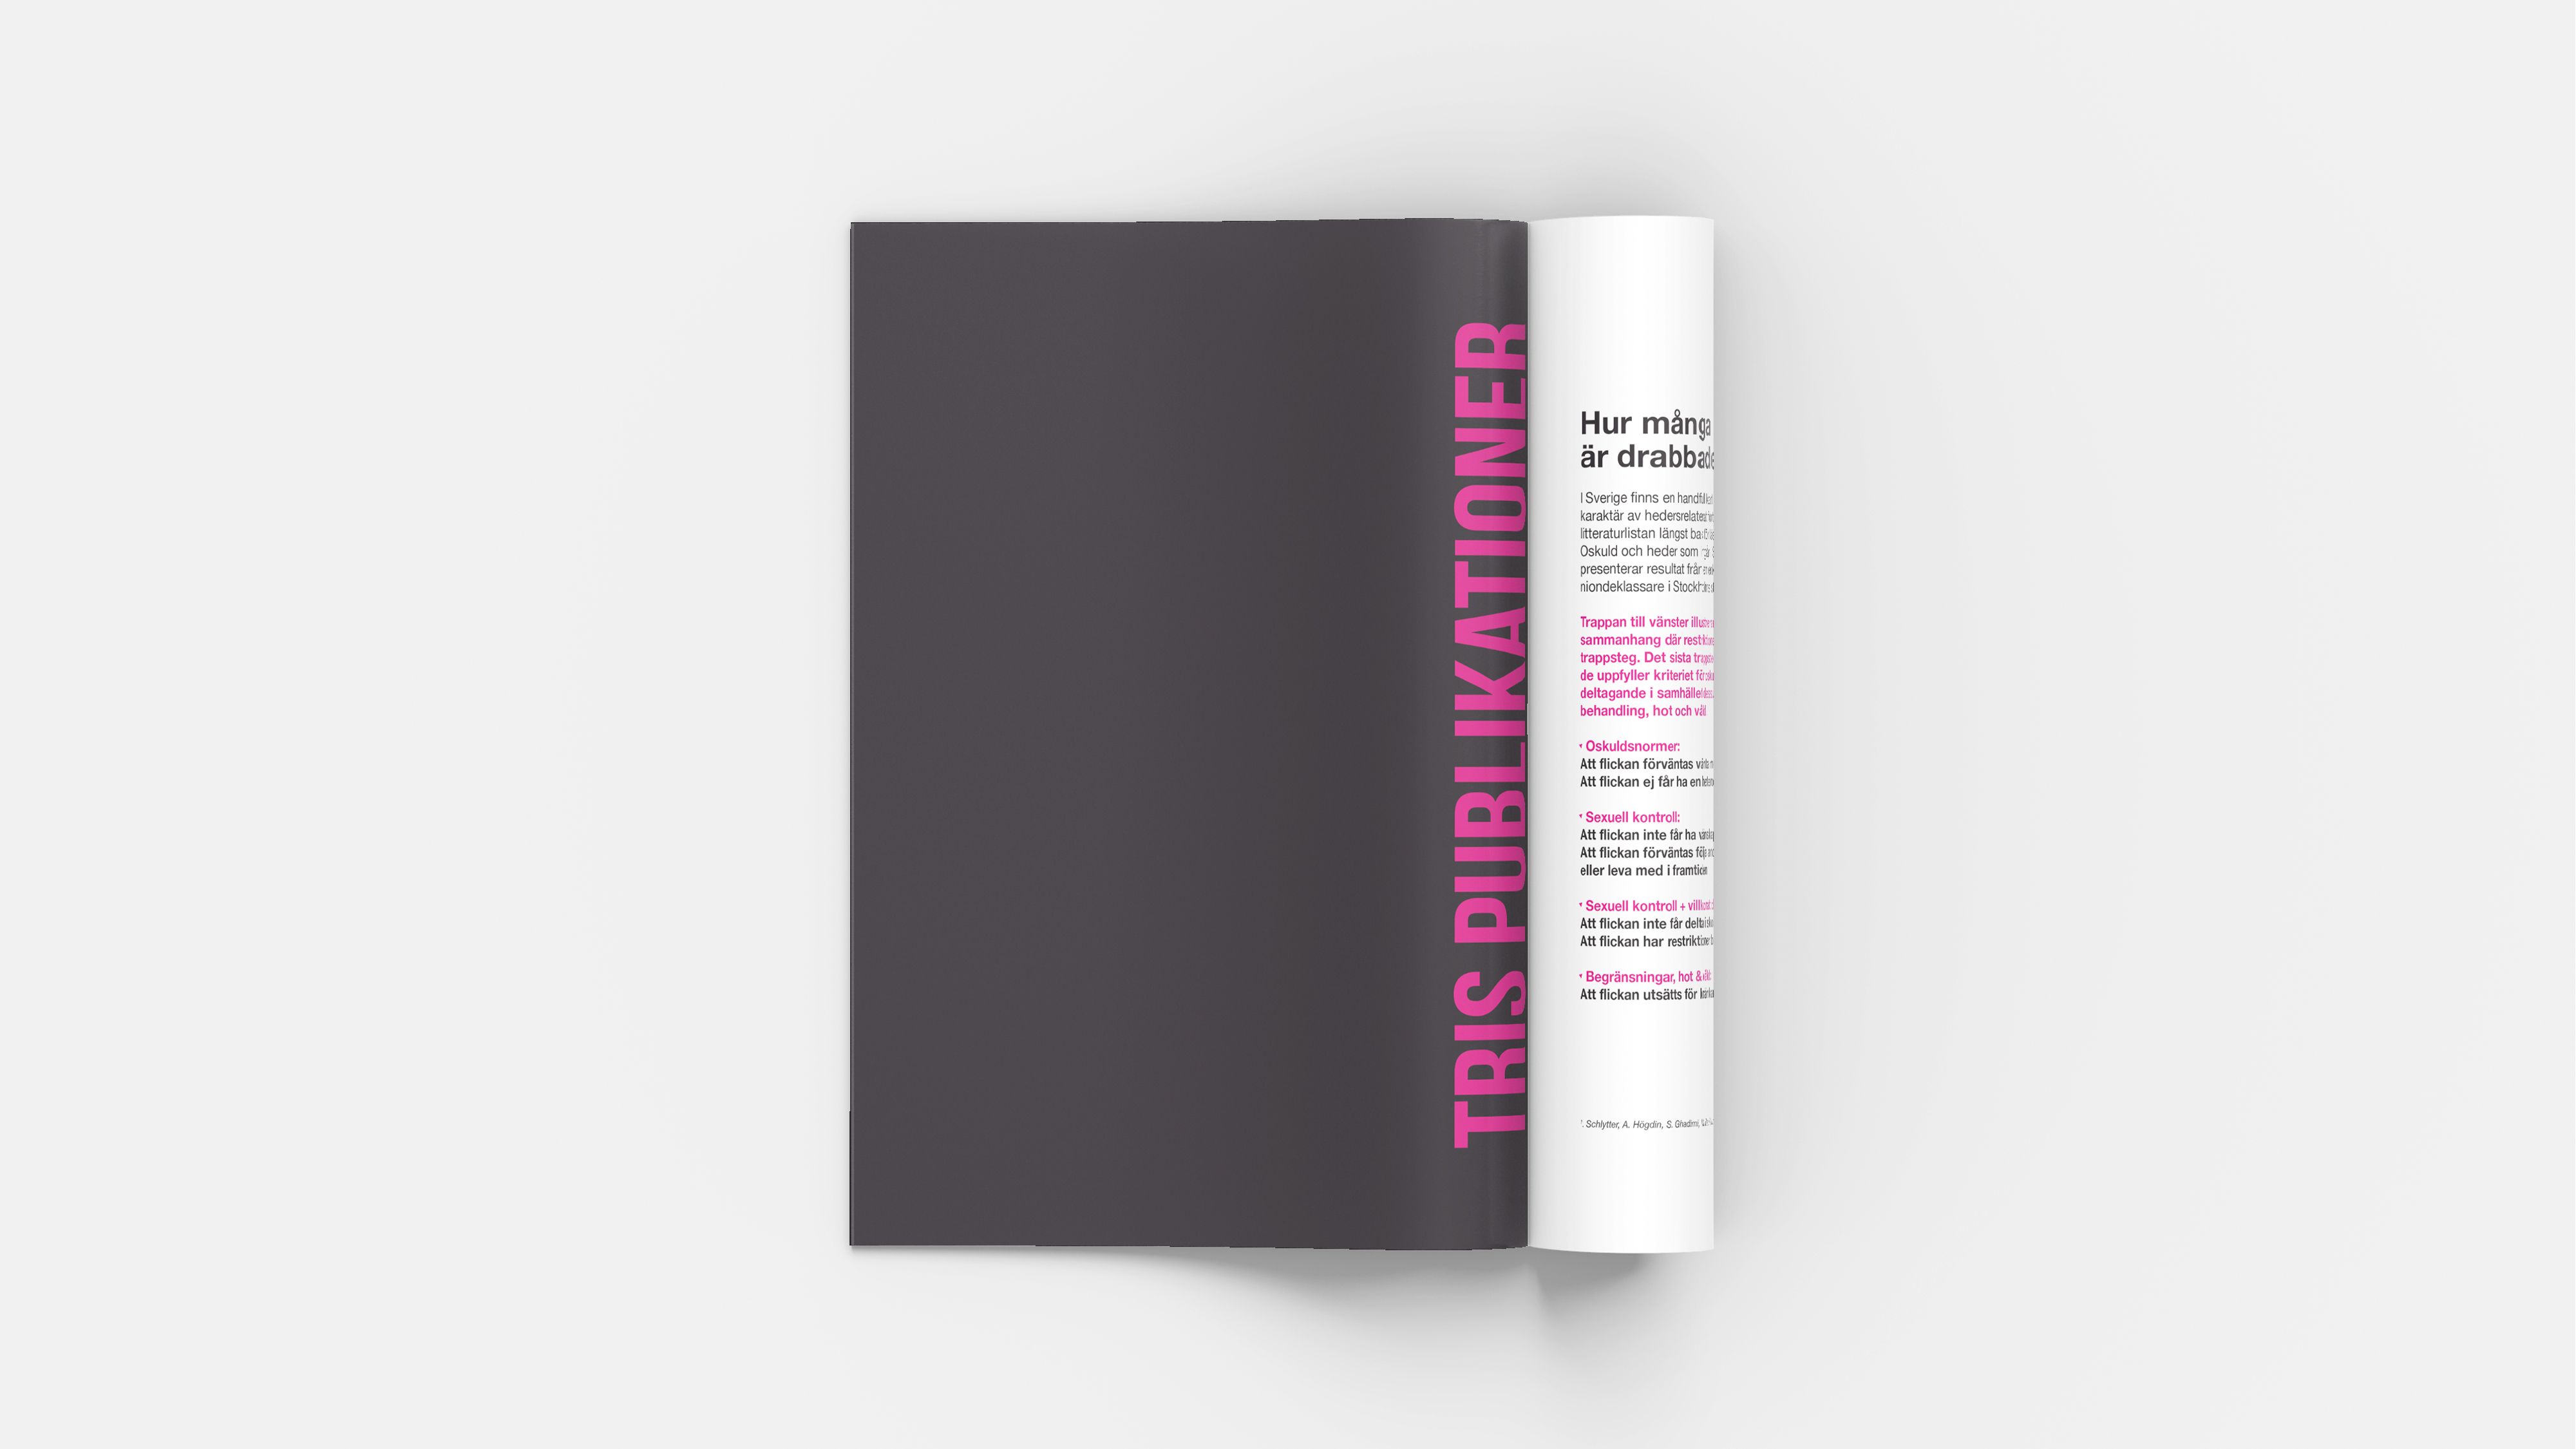 11 tris magazine editorial design emanuel lindqvist.jpg